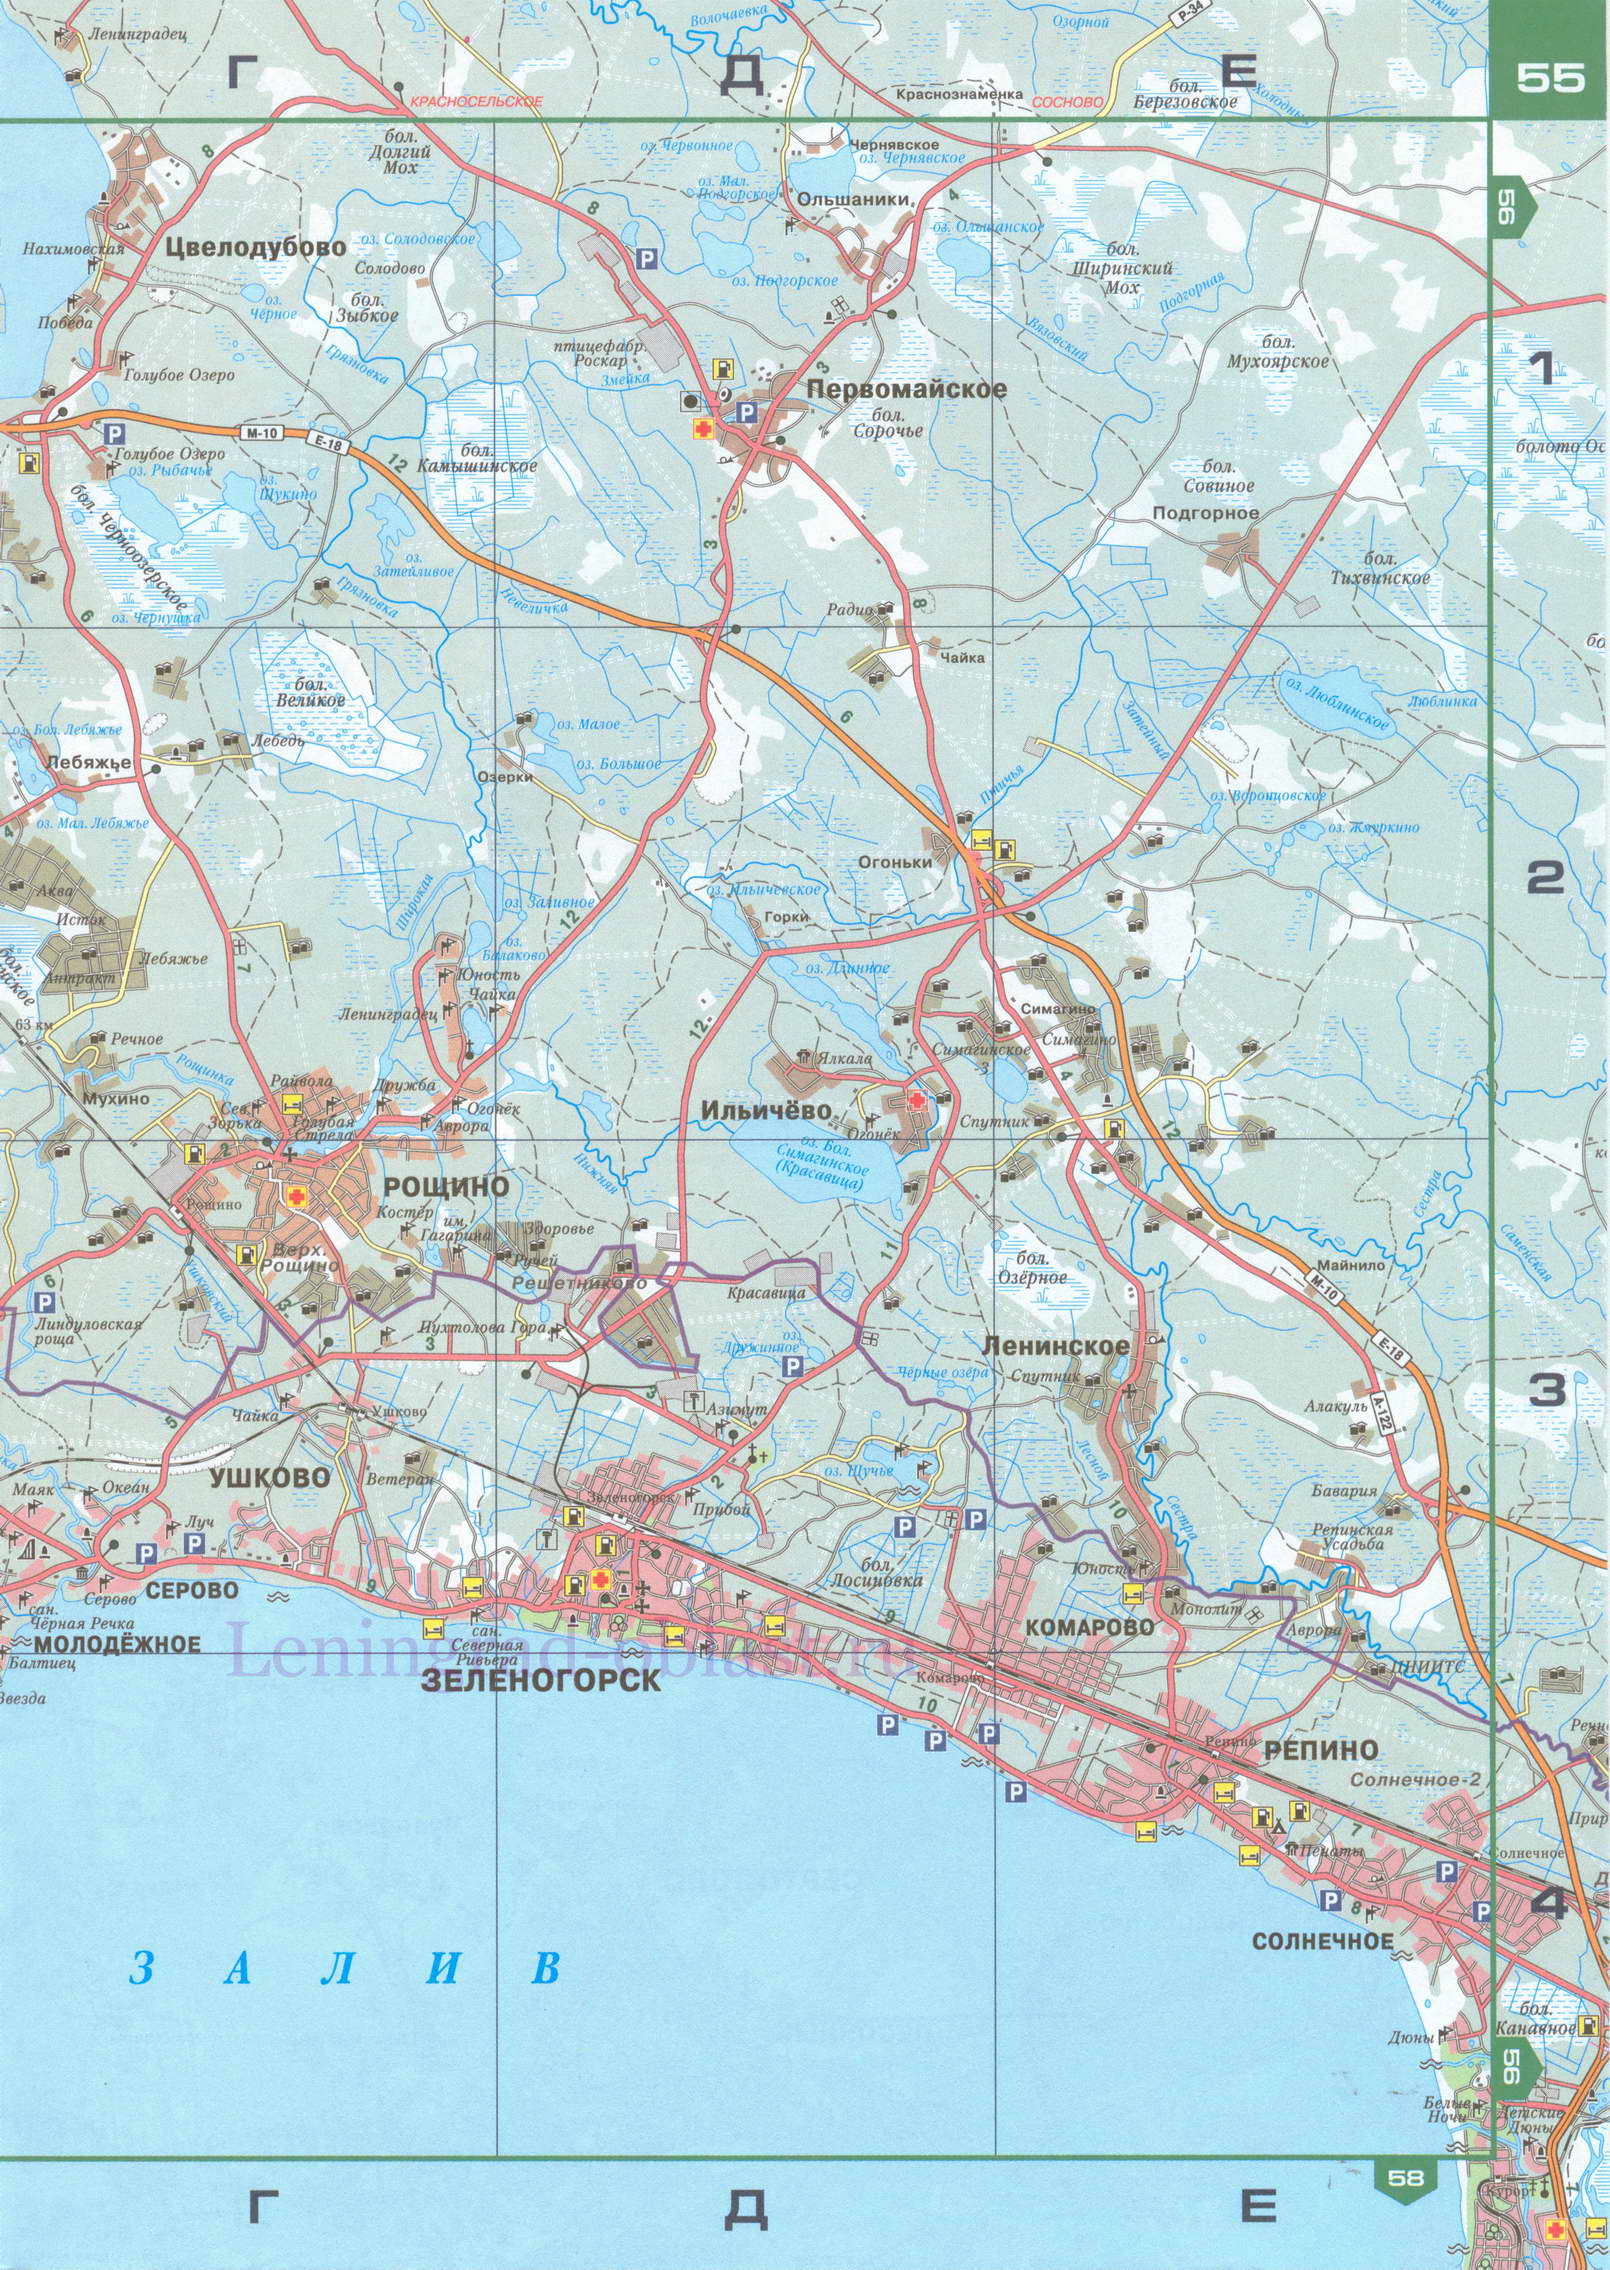 Карта северных пригородов СПб. Карта СПб автомобильная 1см:1200м, B0 - 